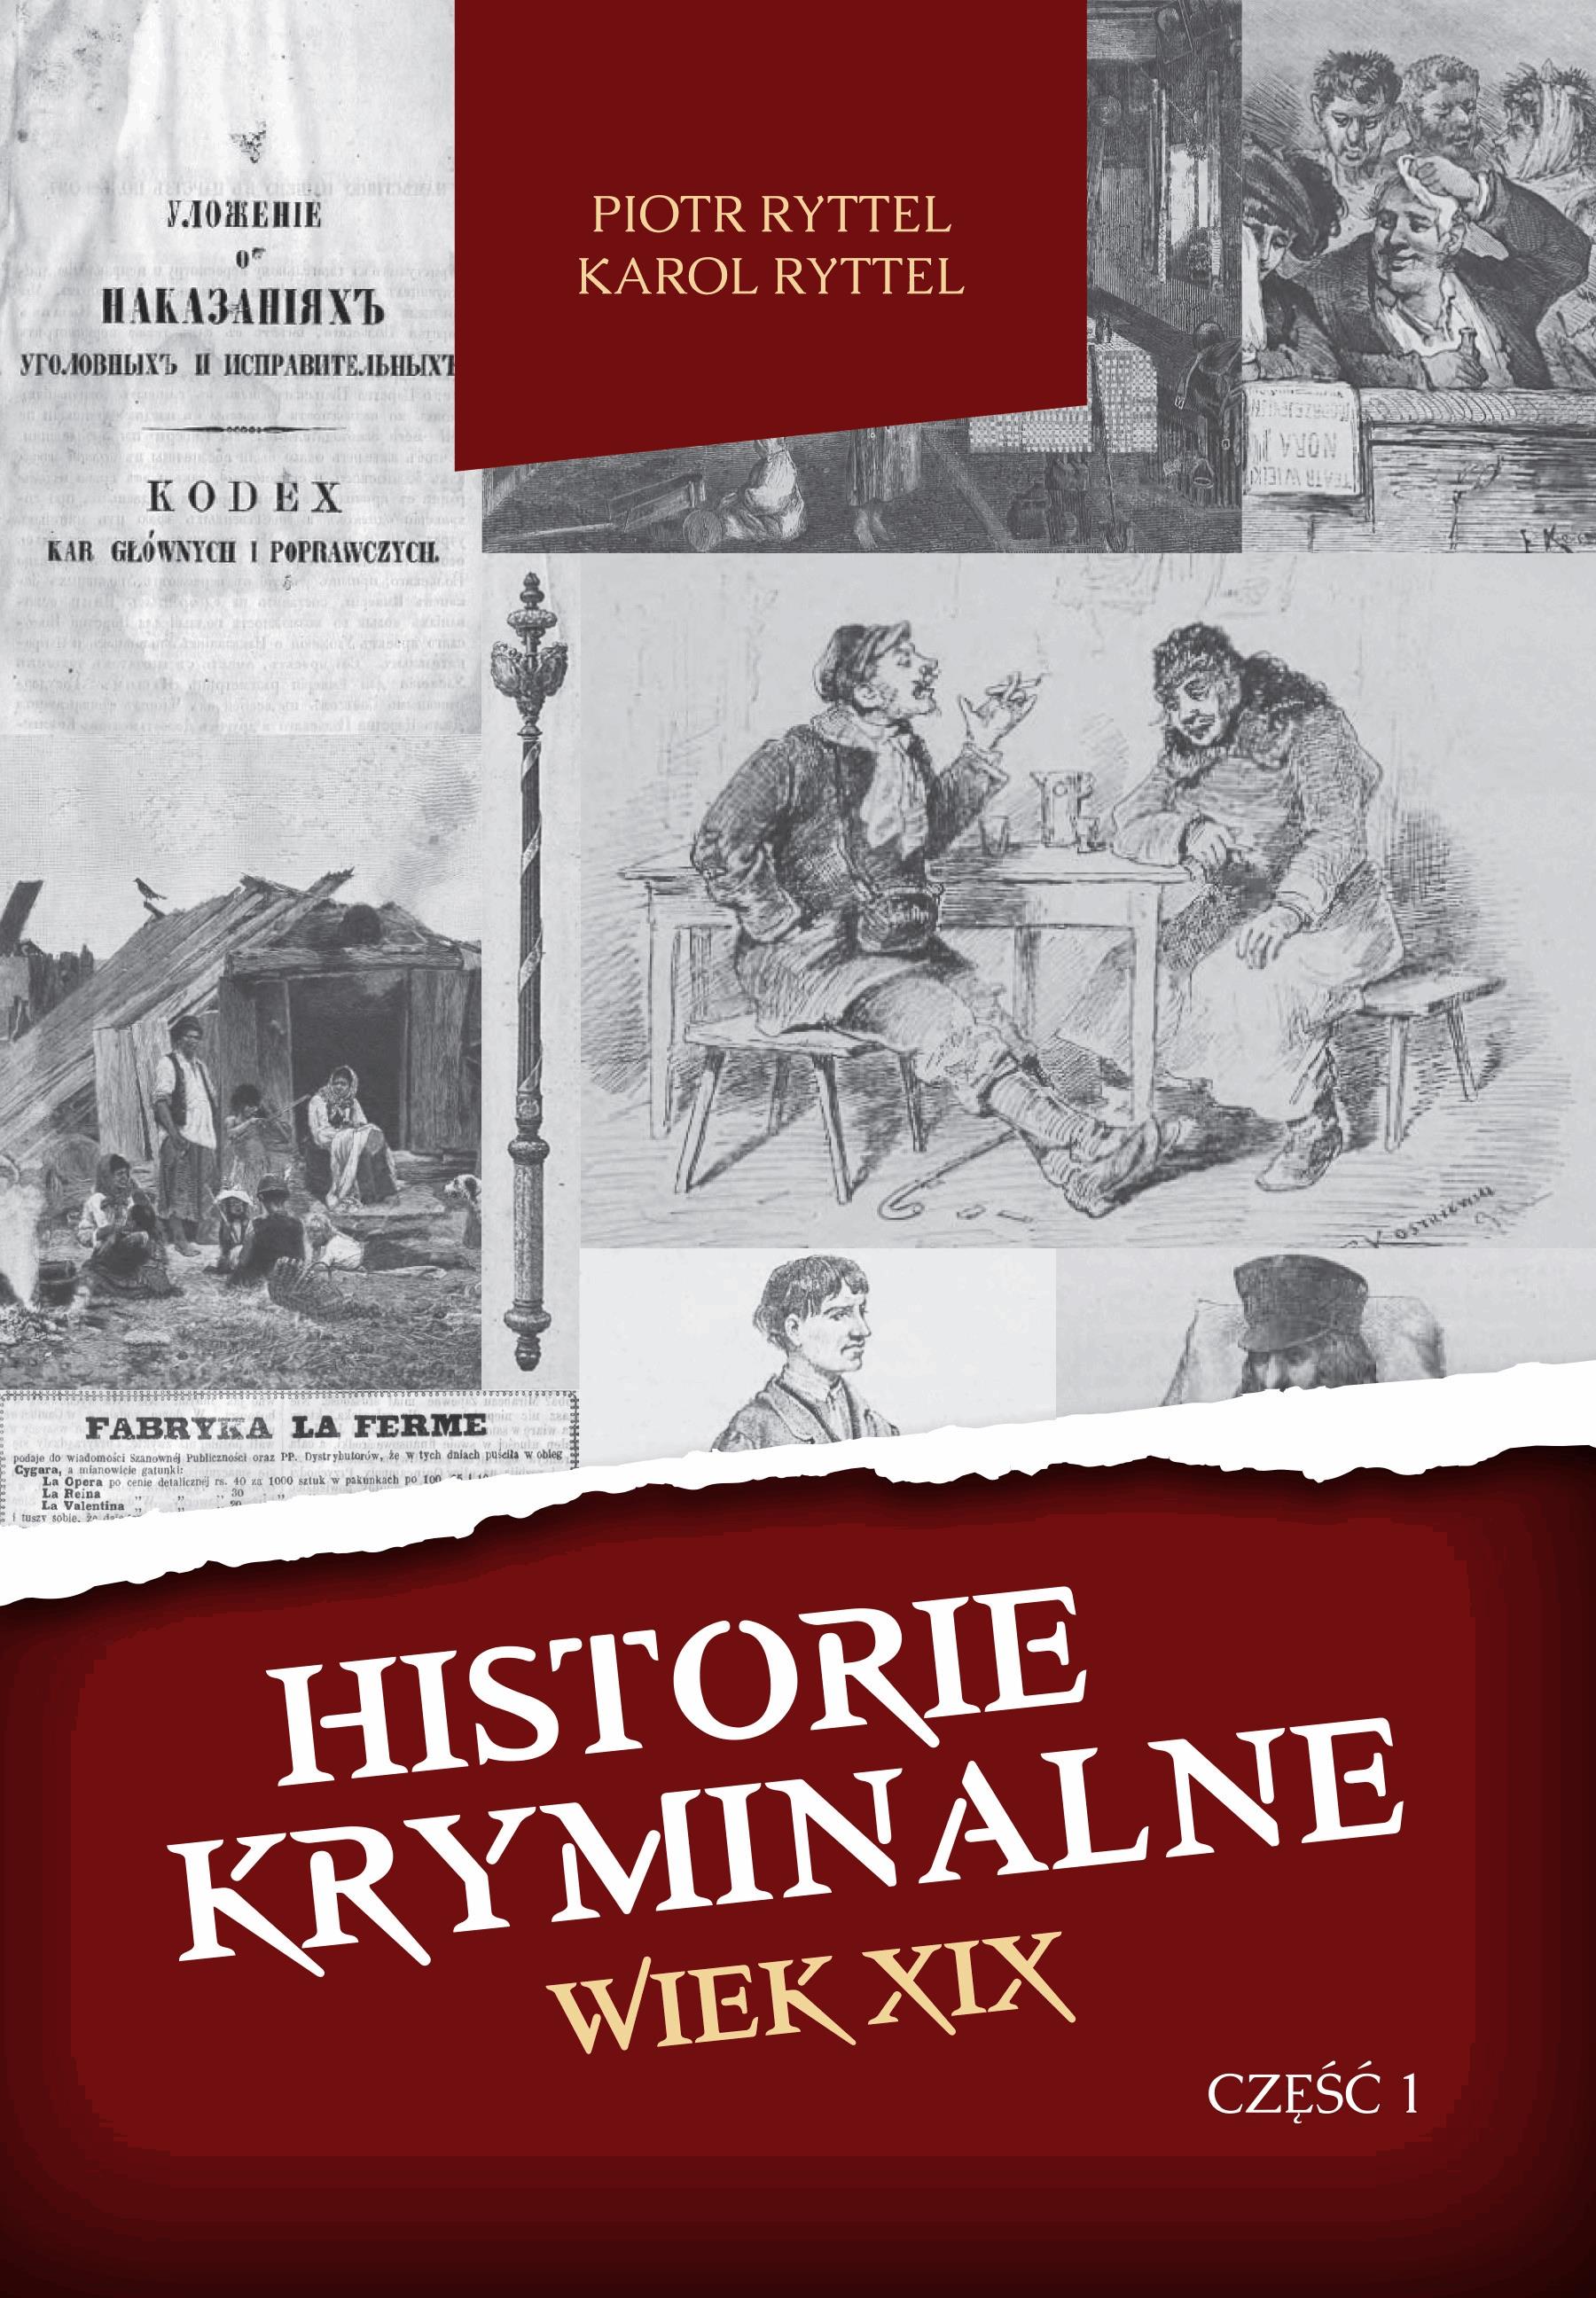 Okładka:Historie kryminalne. Wiek XIX – Część 1 